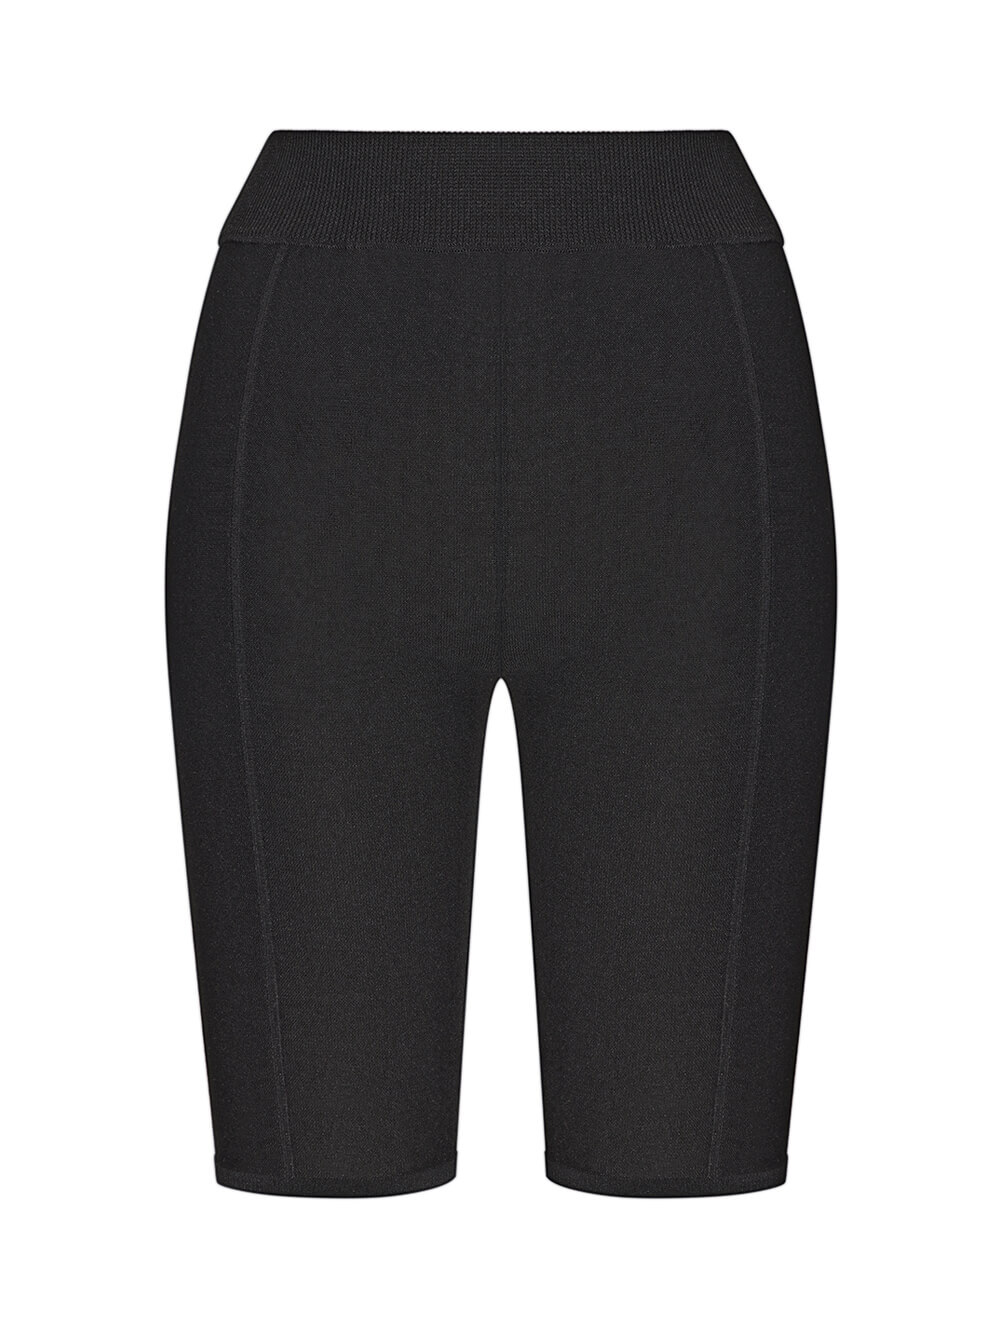 Женские шорты черного цвета из вискозы